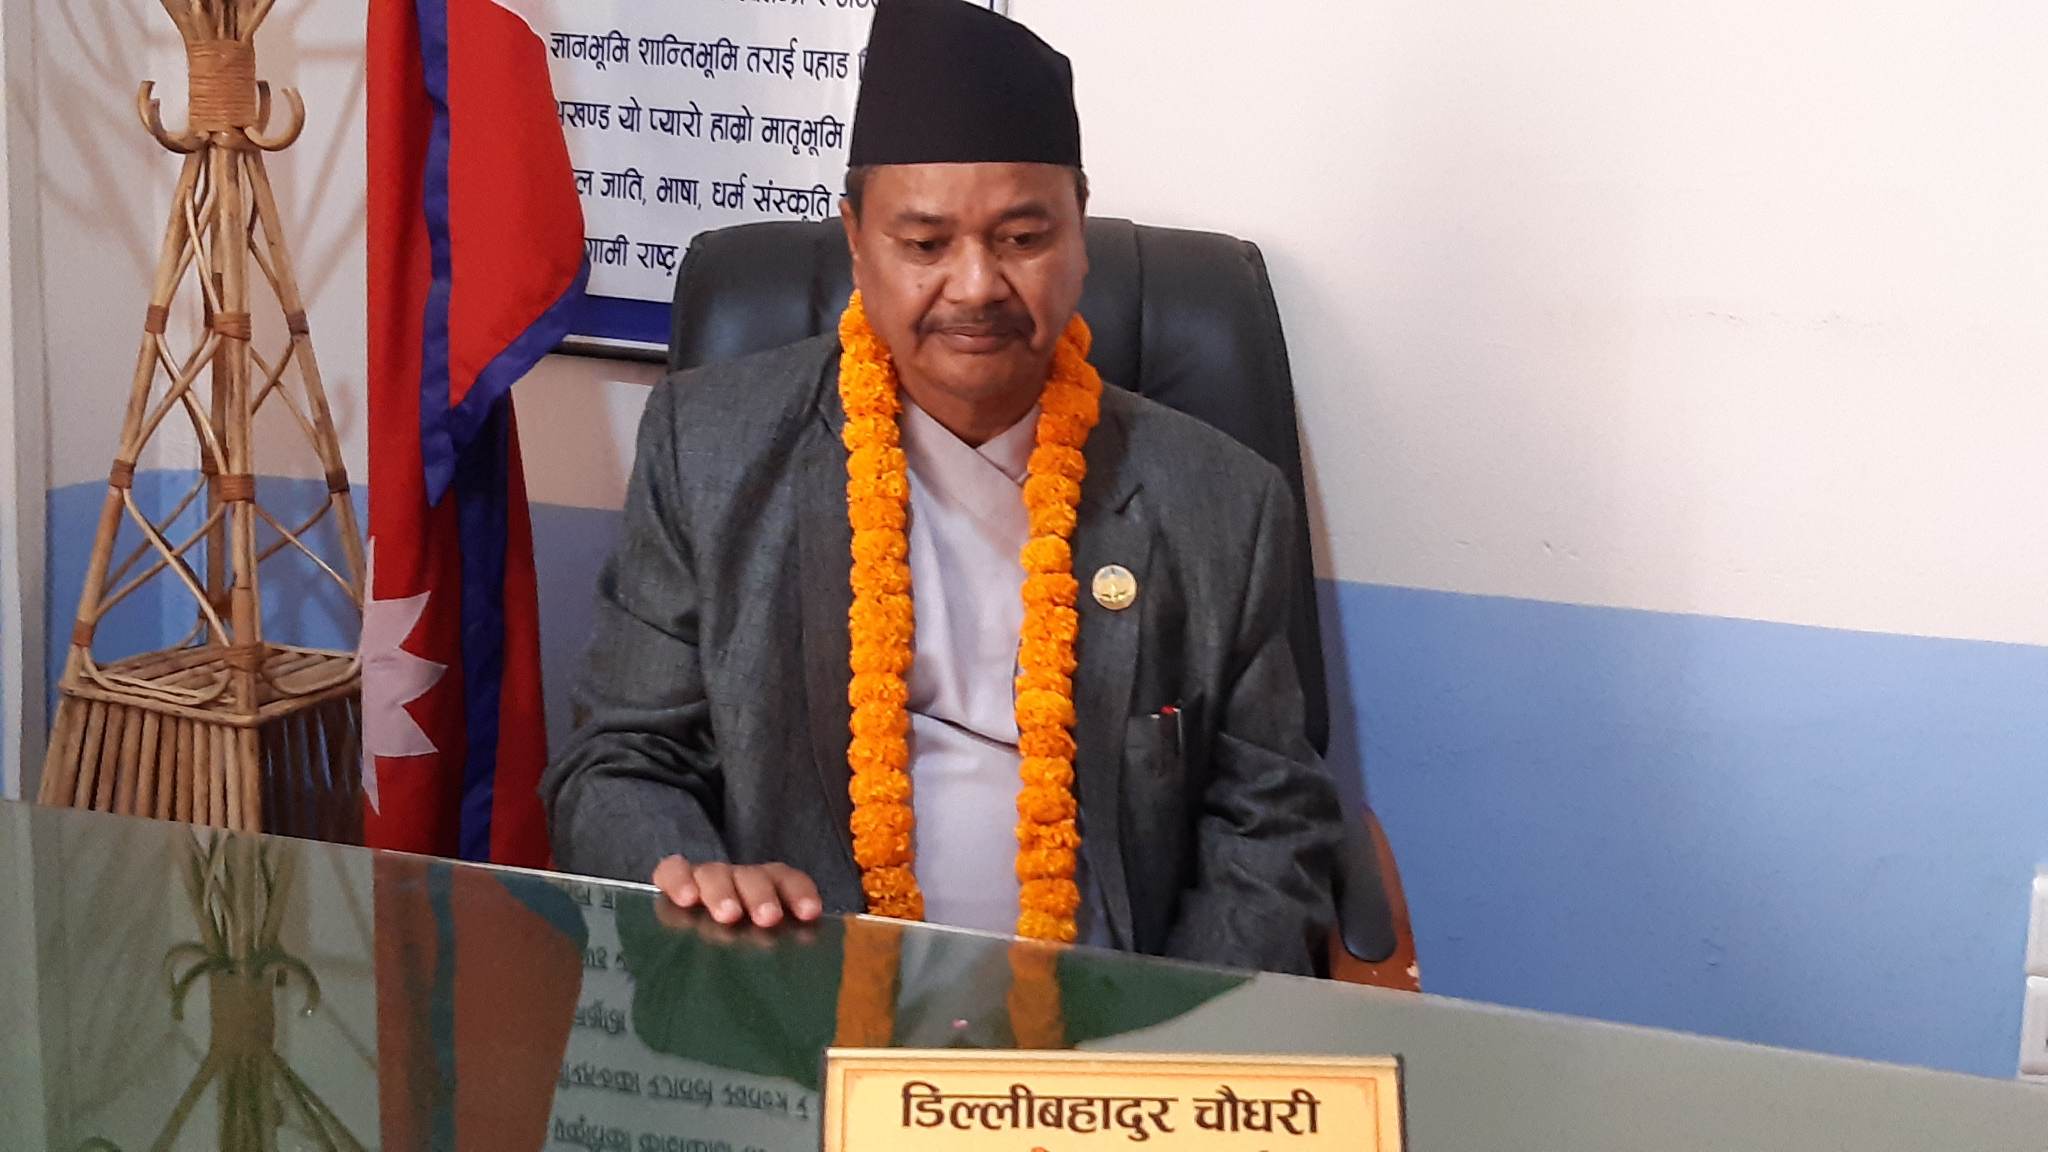 लुम्बिनी प्रदेशका मुख्यमन्त्री चाैधरीले पाए विश्वासको मत, बिपक्षमा २९ मत